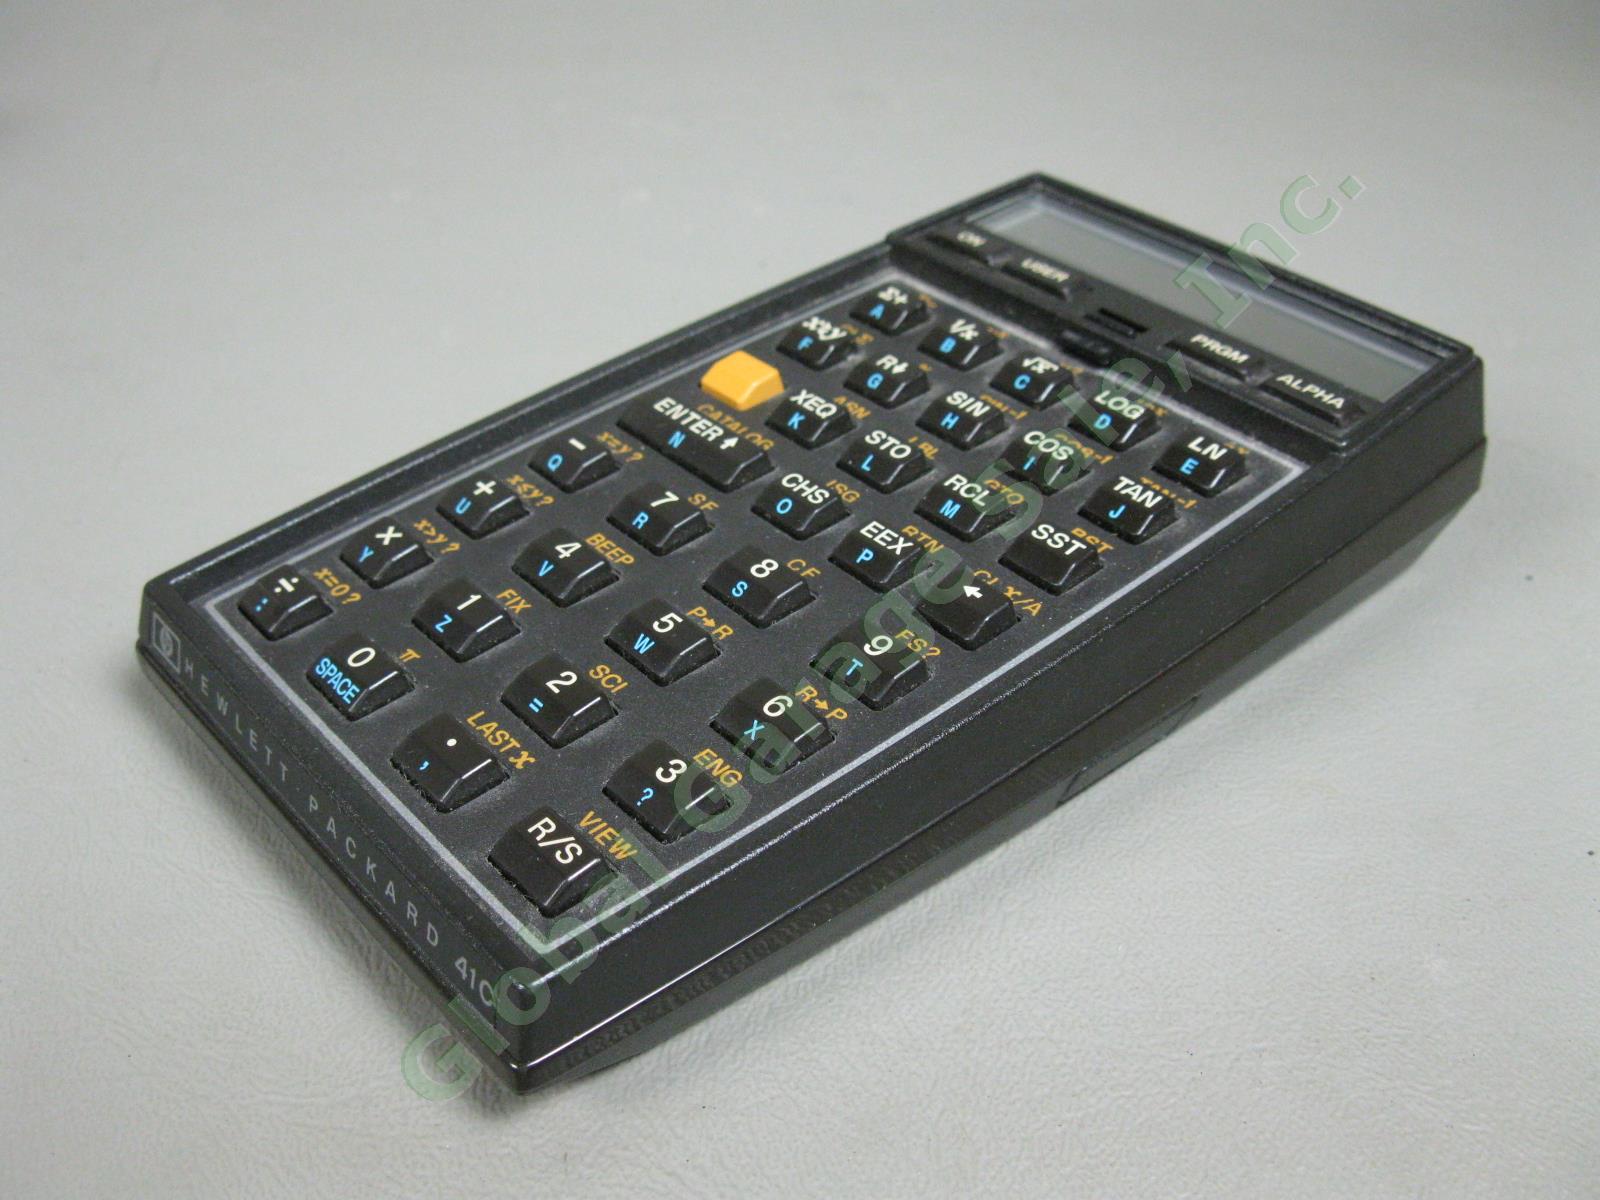 HP-41C Hewlett Packard Scientific System Calculator Exc Cond w/ Original Case NR 2